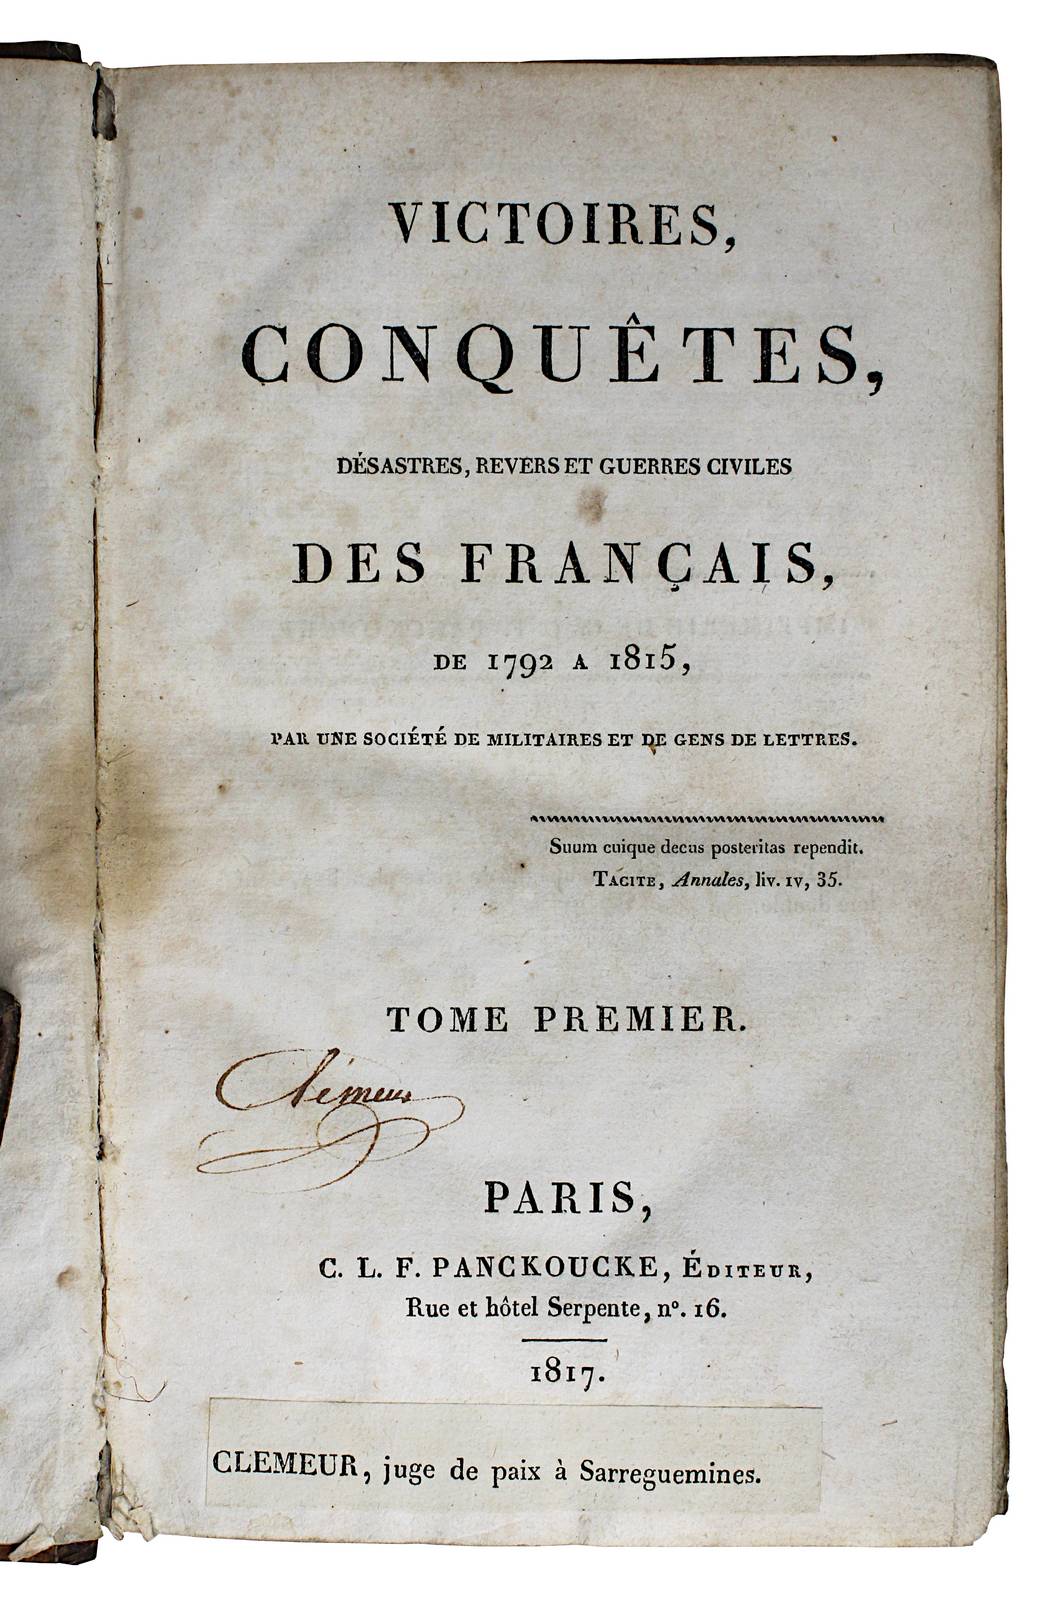 "Victoires Conquêtes, Desastres, Revers et Guerres Civiles des Francais, de 1792 a 1815", Paris 1817 - Image 2 of 2